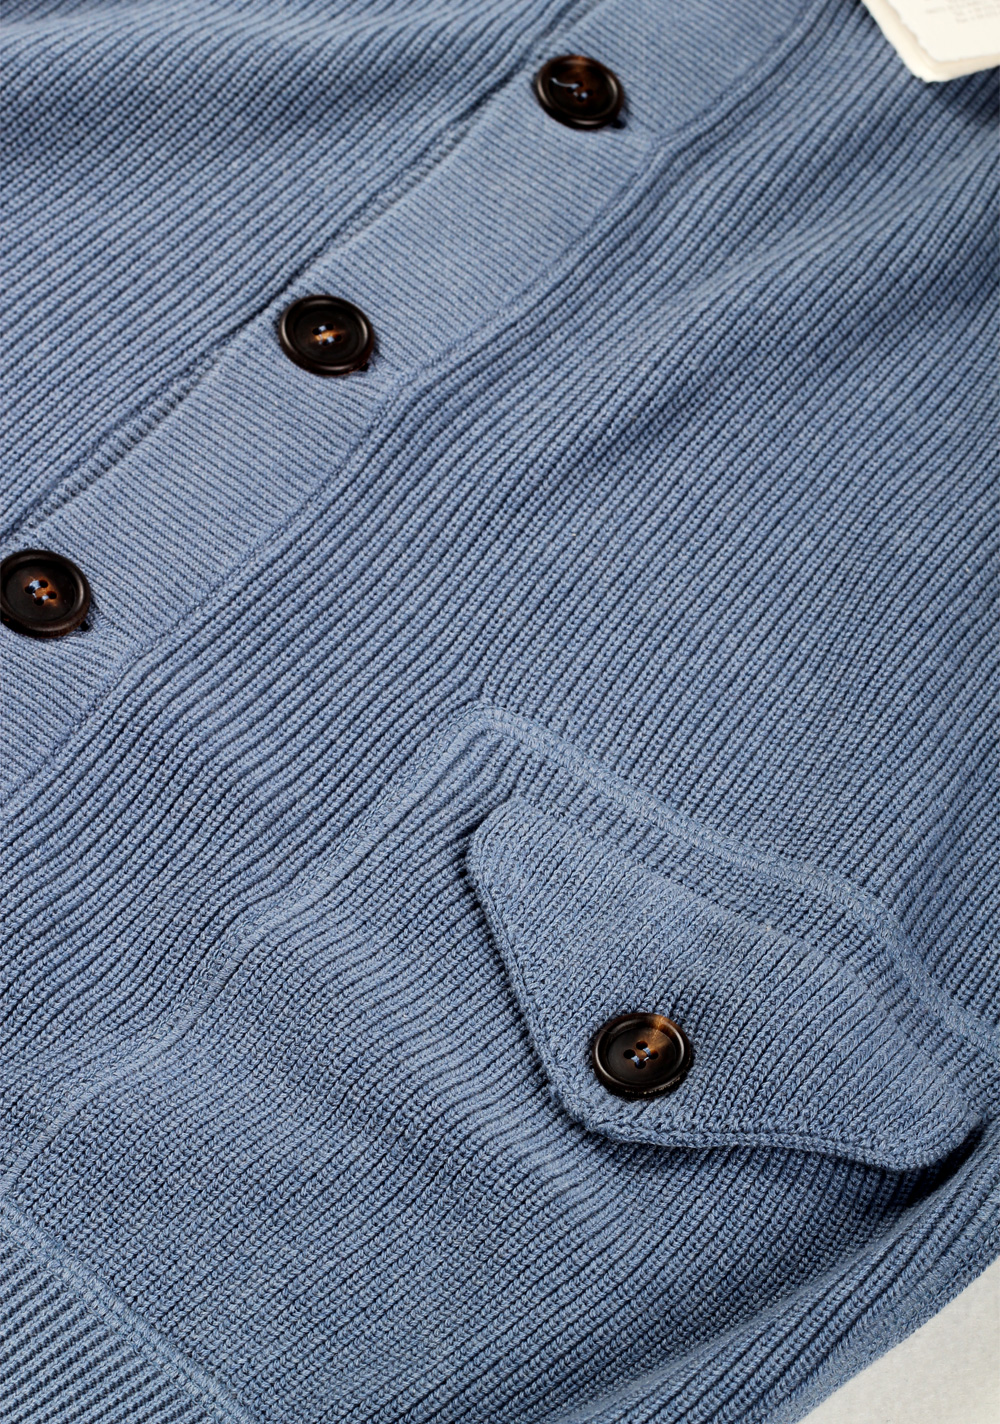 Cucinelli Cardigan Size 58 / 48R U.S. Light Blue Cotton | Costume Limité